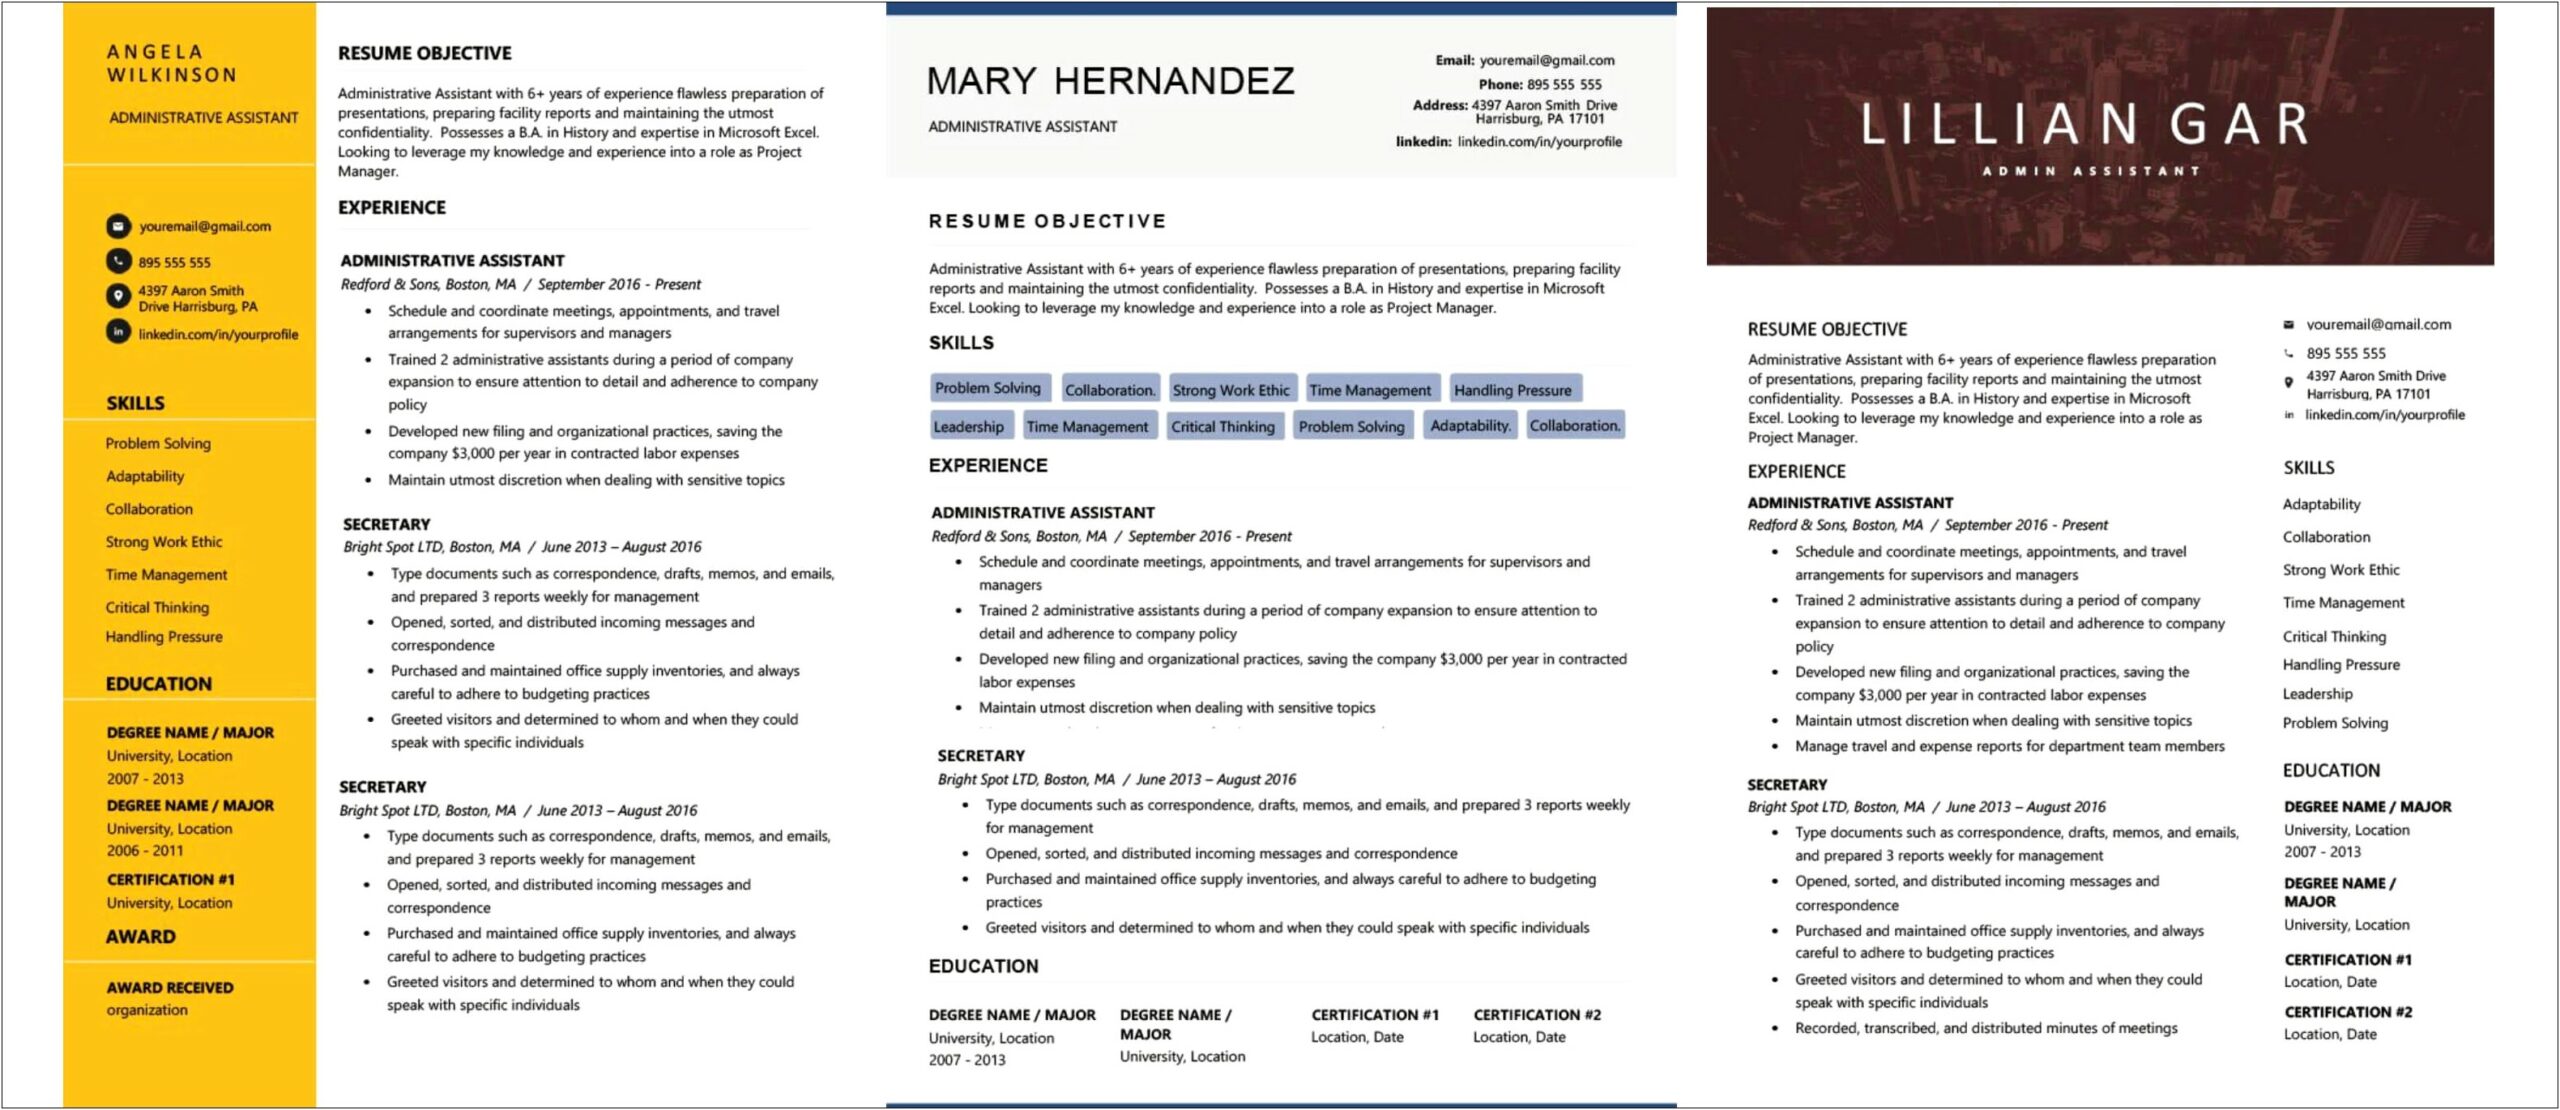 Business Plan Project Description For Resume